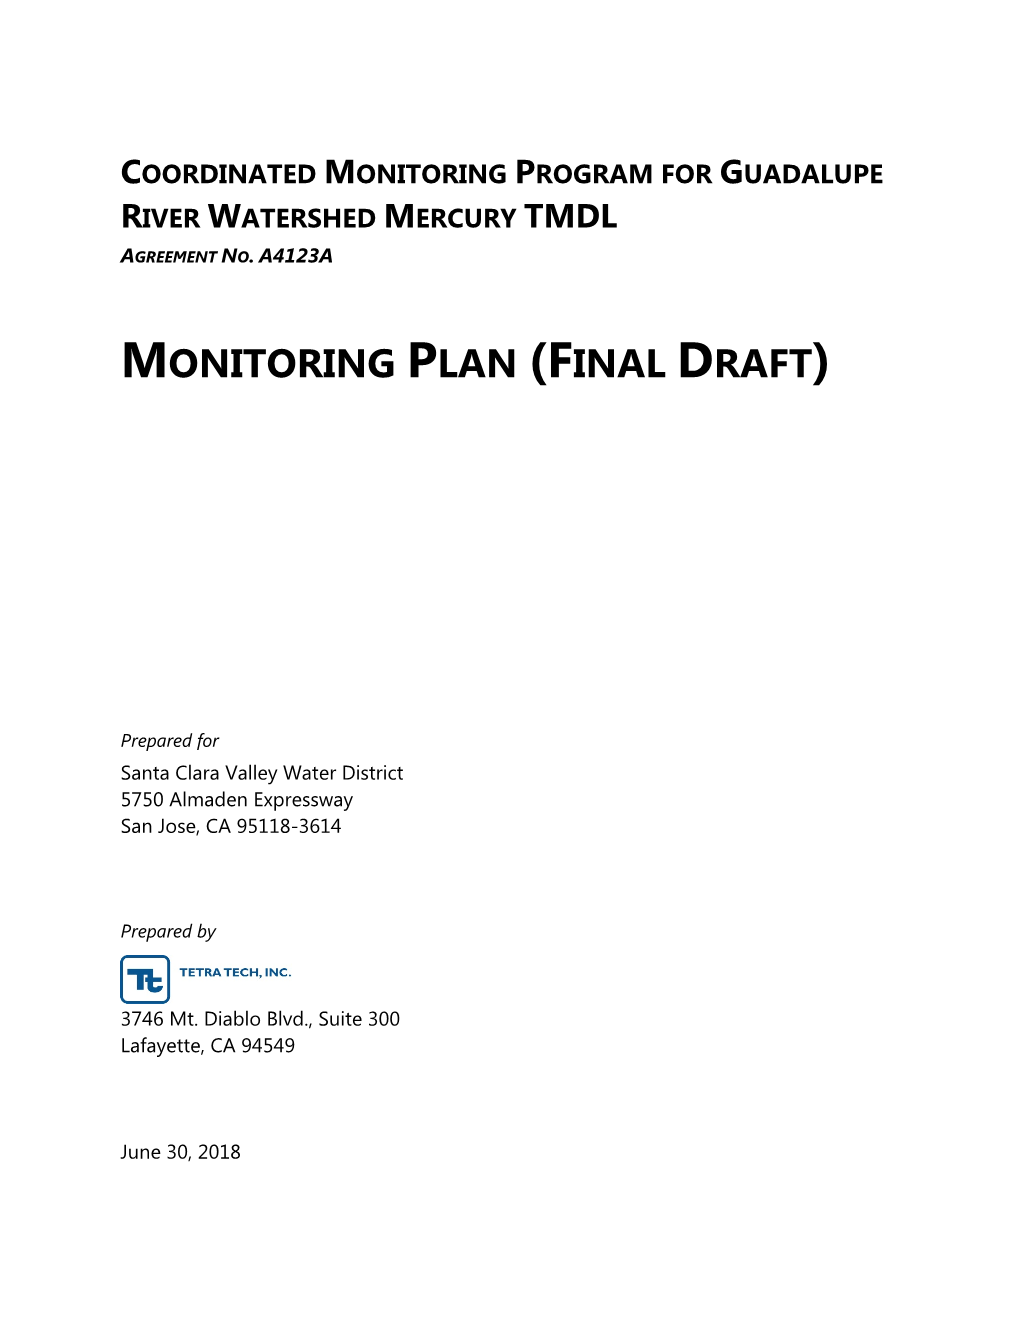 Monitoring Plan (Final Draft)